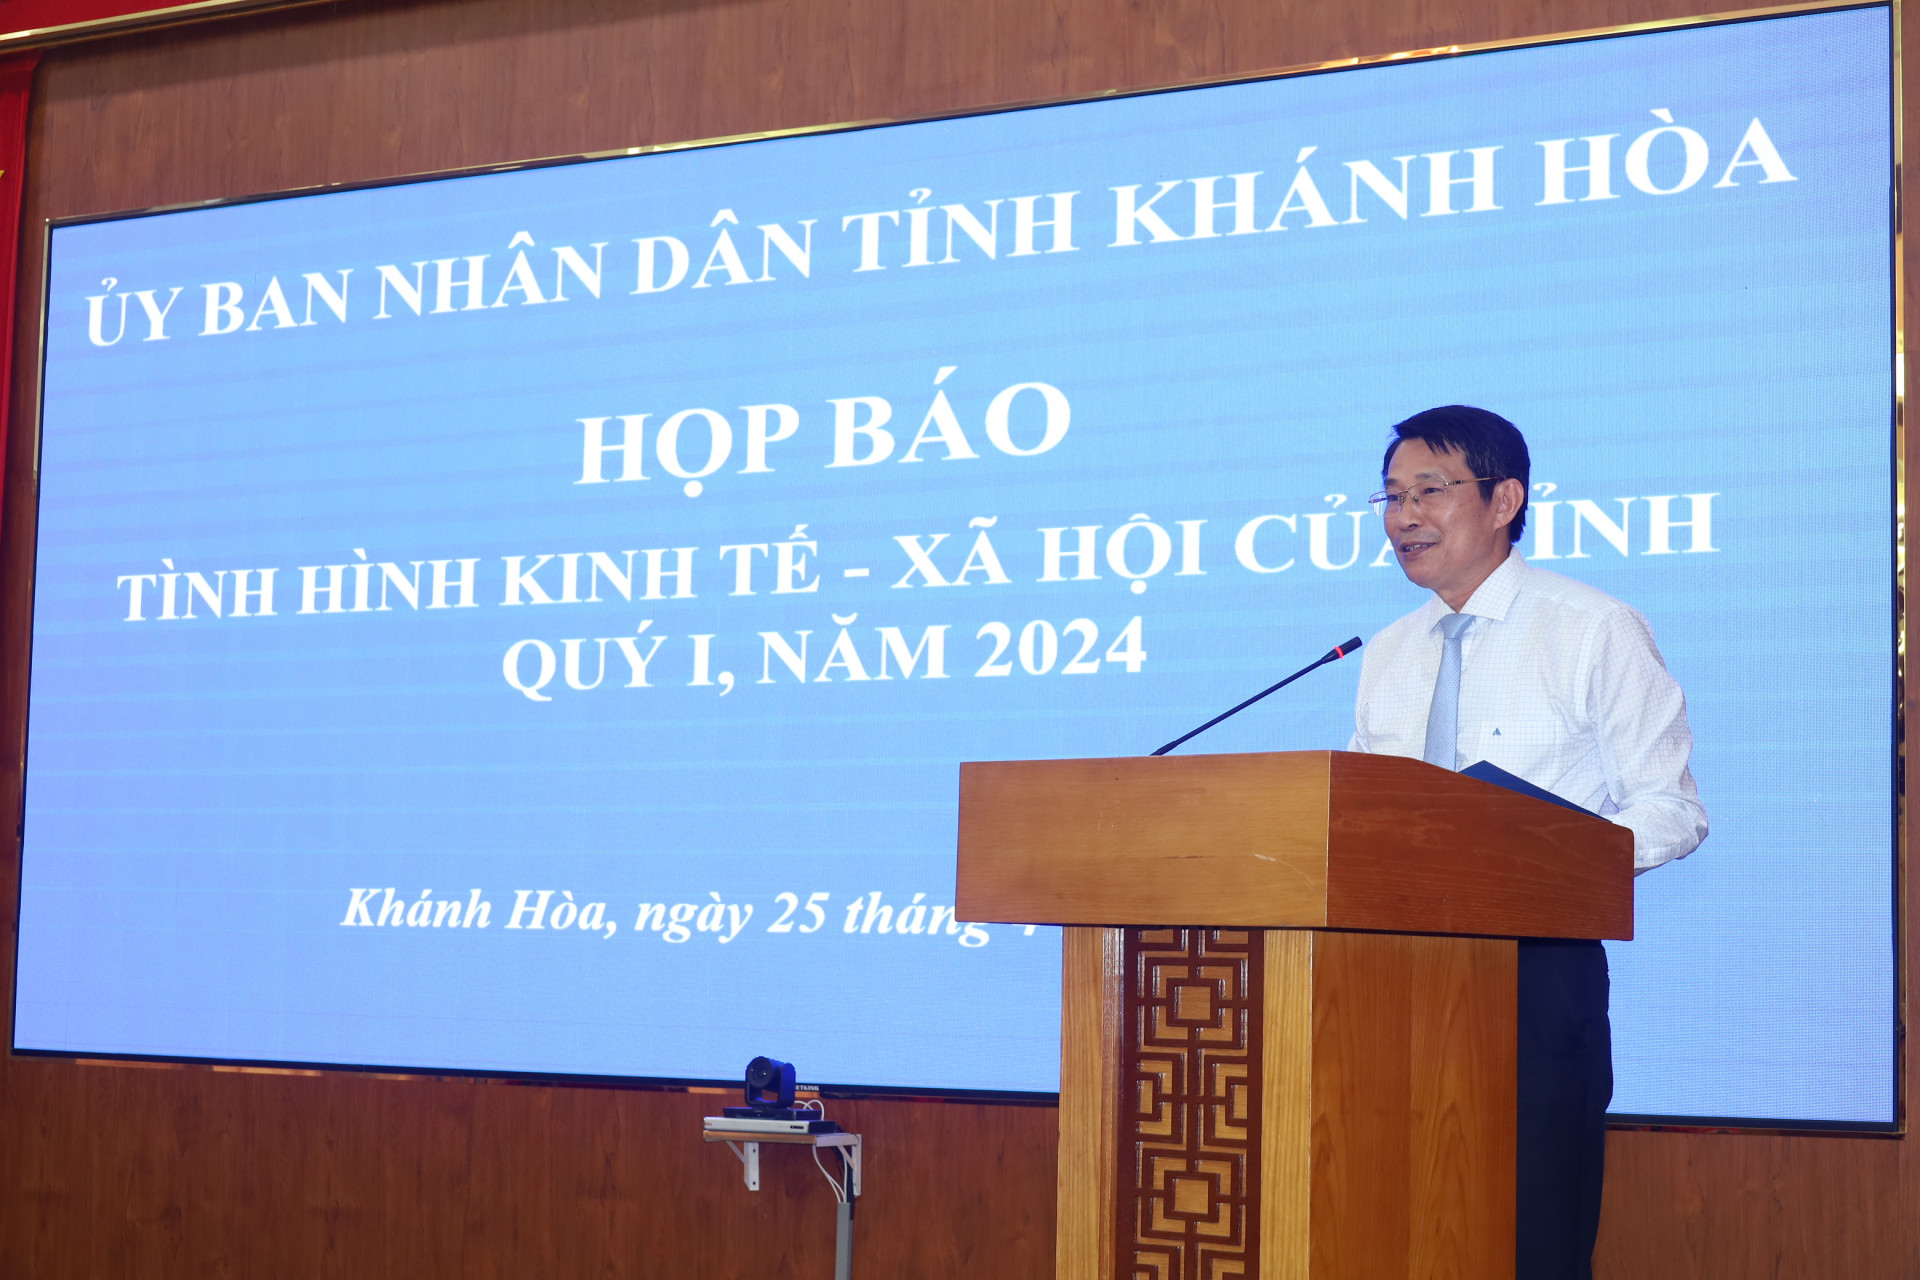 Đồng chí Đinh Văn Thiệu phát biểu tại buổi họp báo.